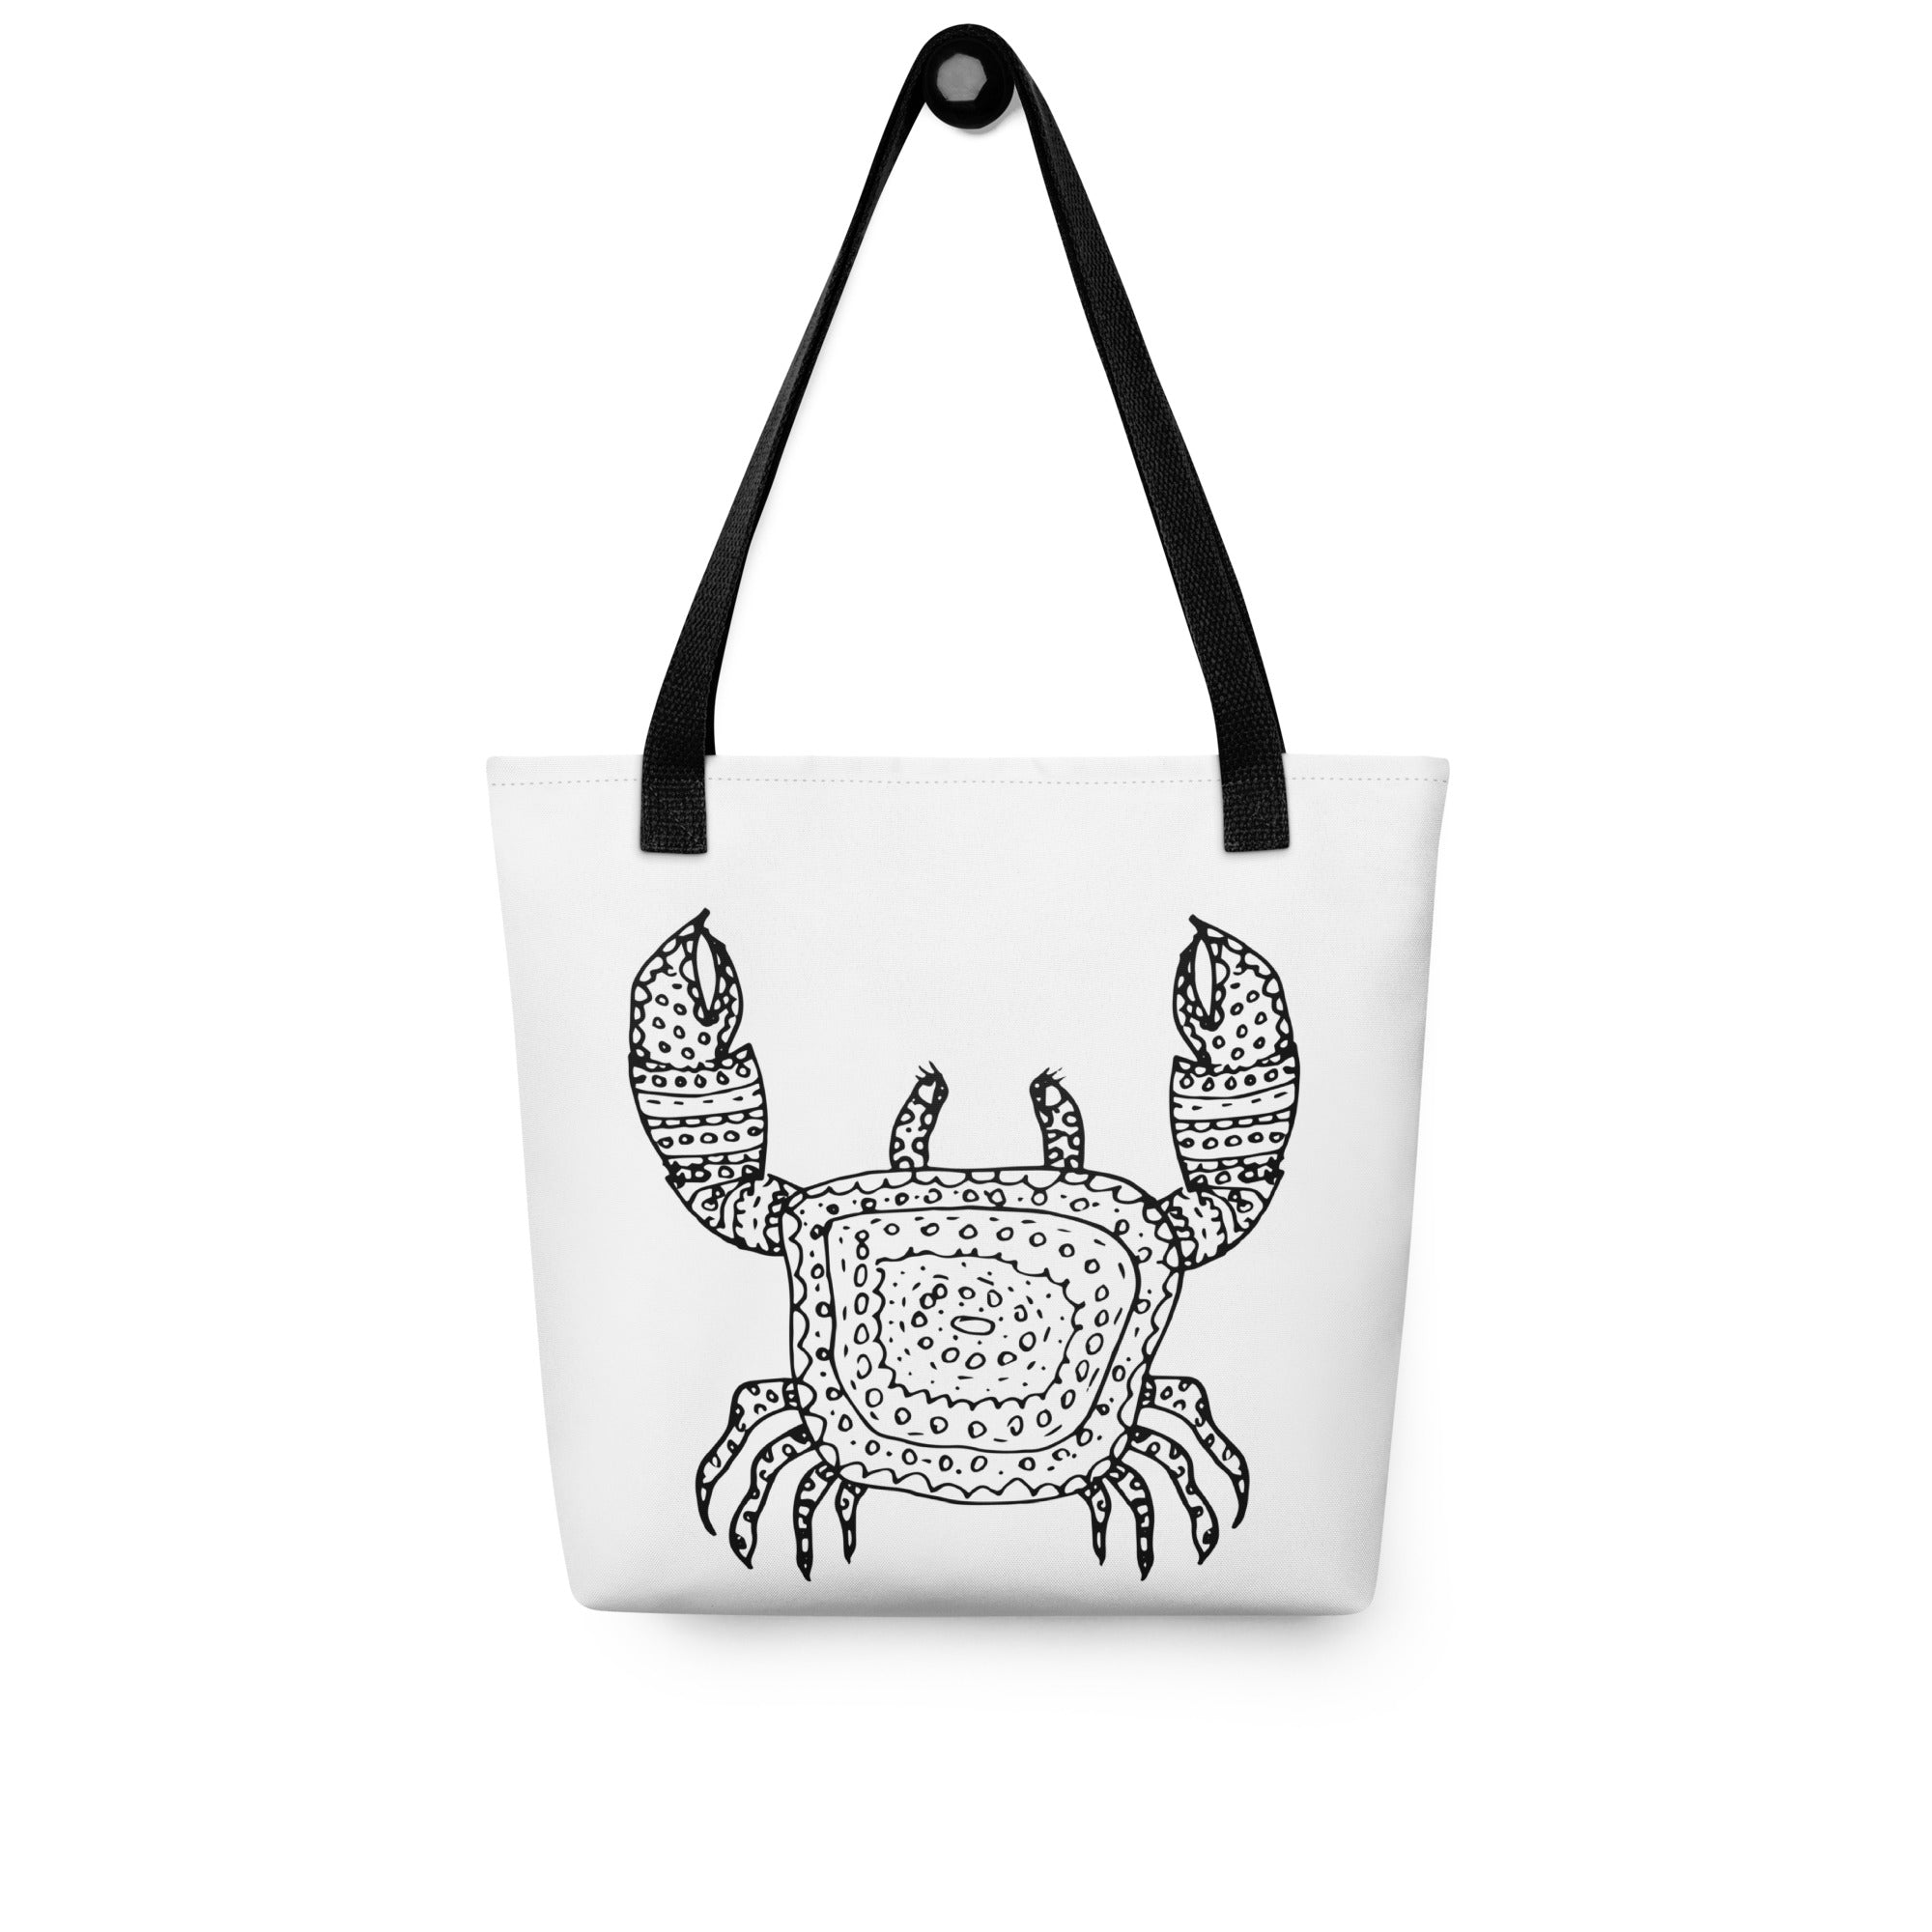 Tote bag- Ocean life Crab